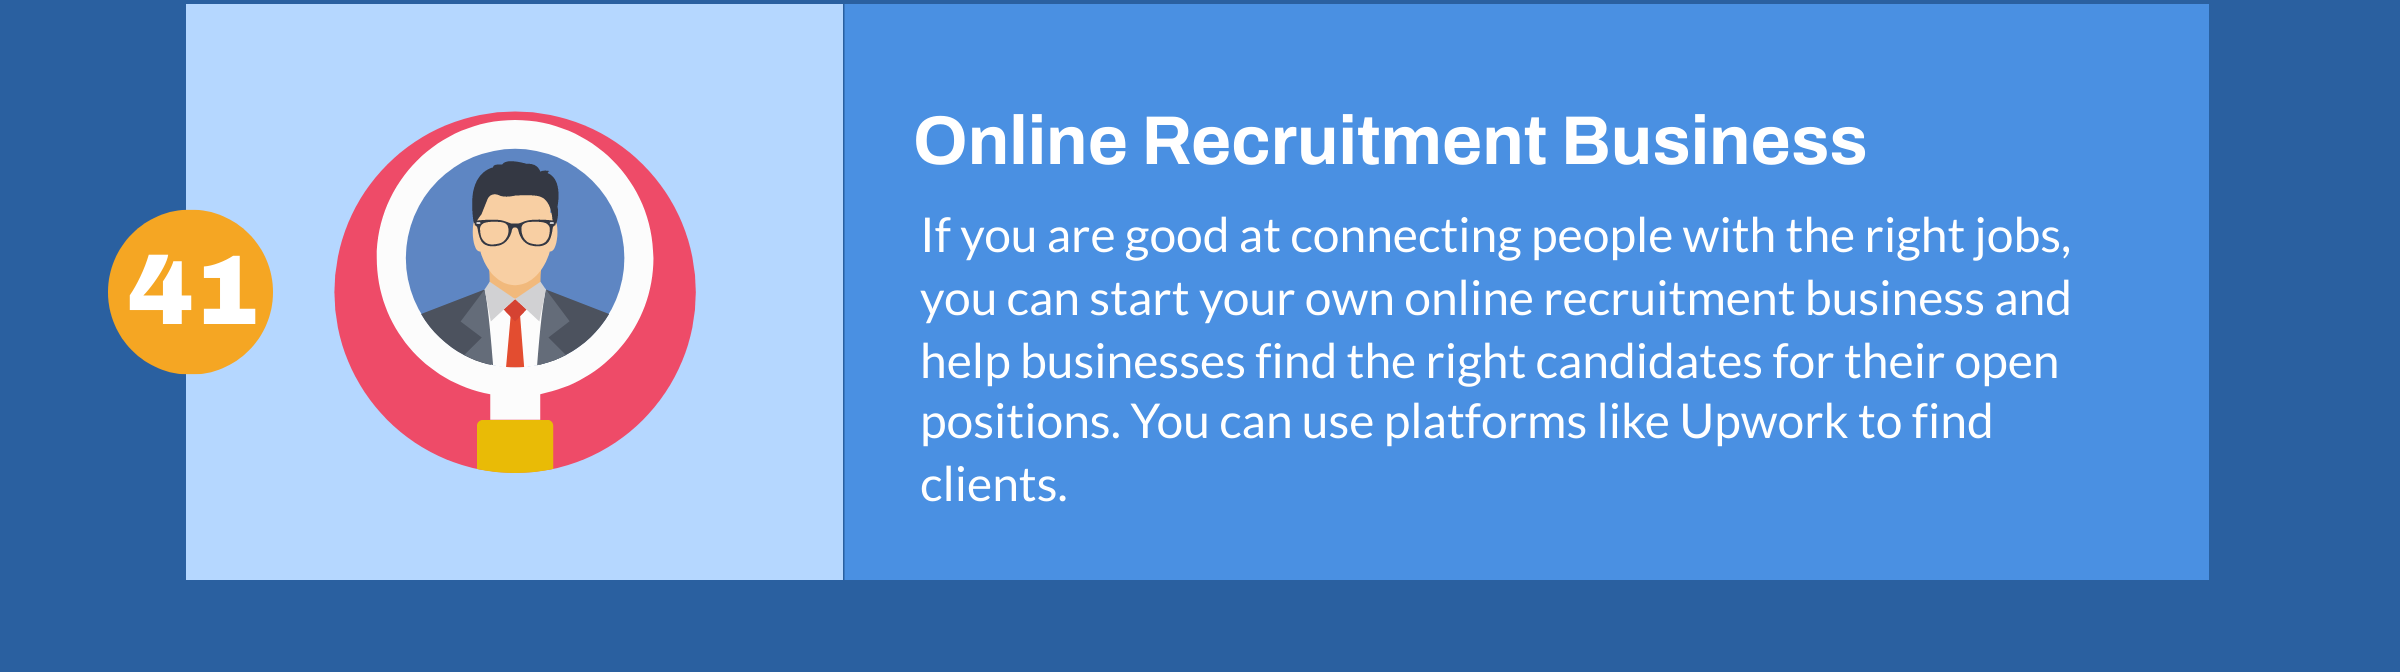 Online-Rekrutierungsgeschäft